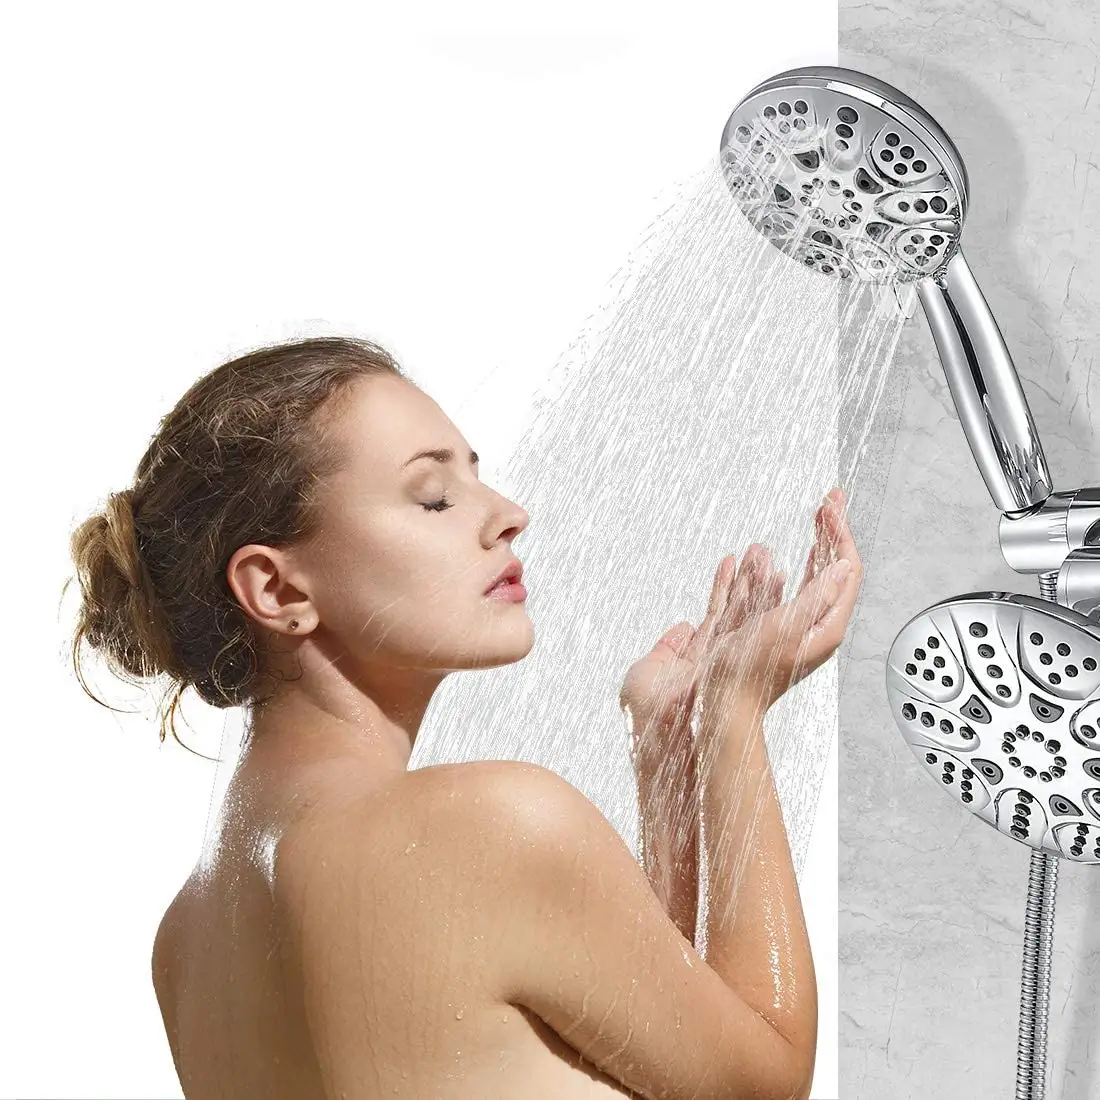 Amazon Hot Selling CUPC 6 Funktionen ABS Spa Hand brause kopf und Regen dusche Combo Dual 2 in 1 Dusch kopfs ystem